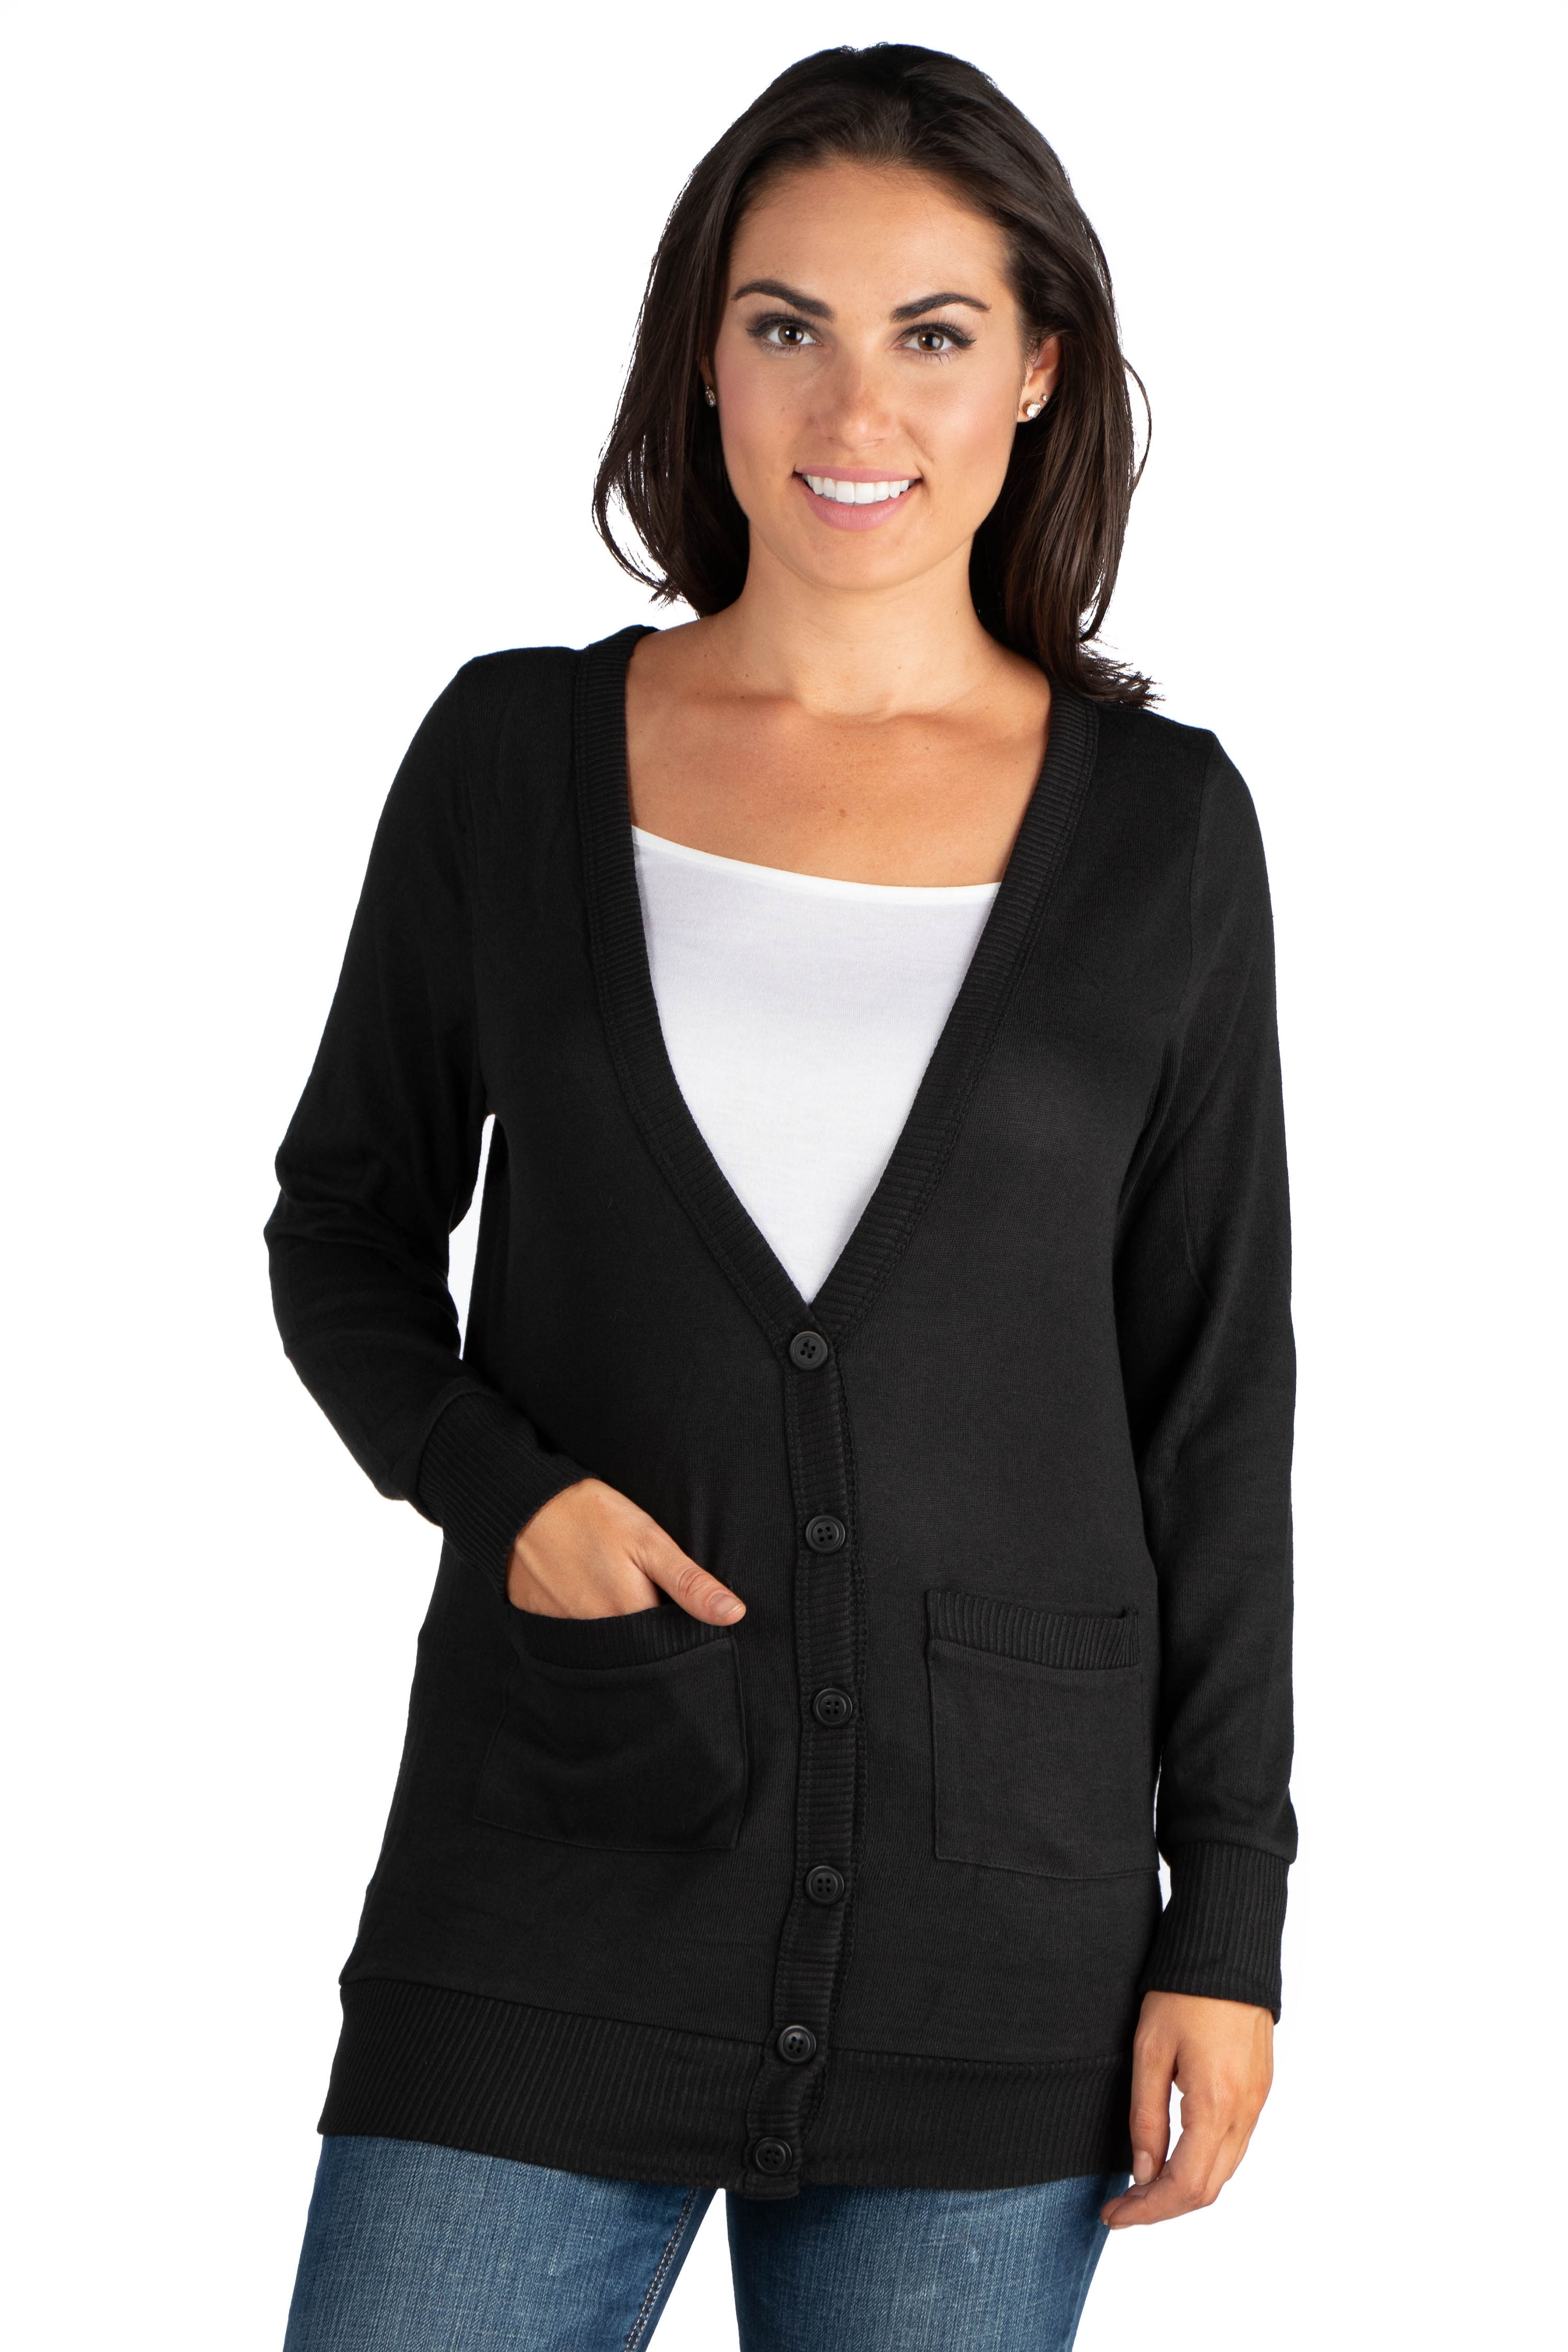 Women's Casual Comfort V-neck Pocket Cardigan - Walmart.com